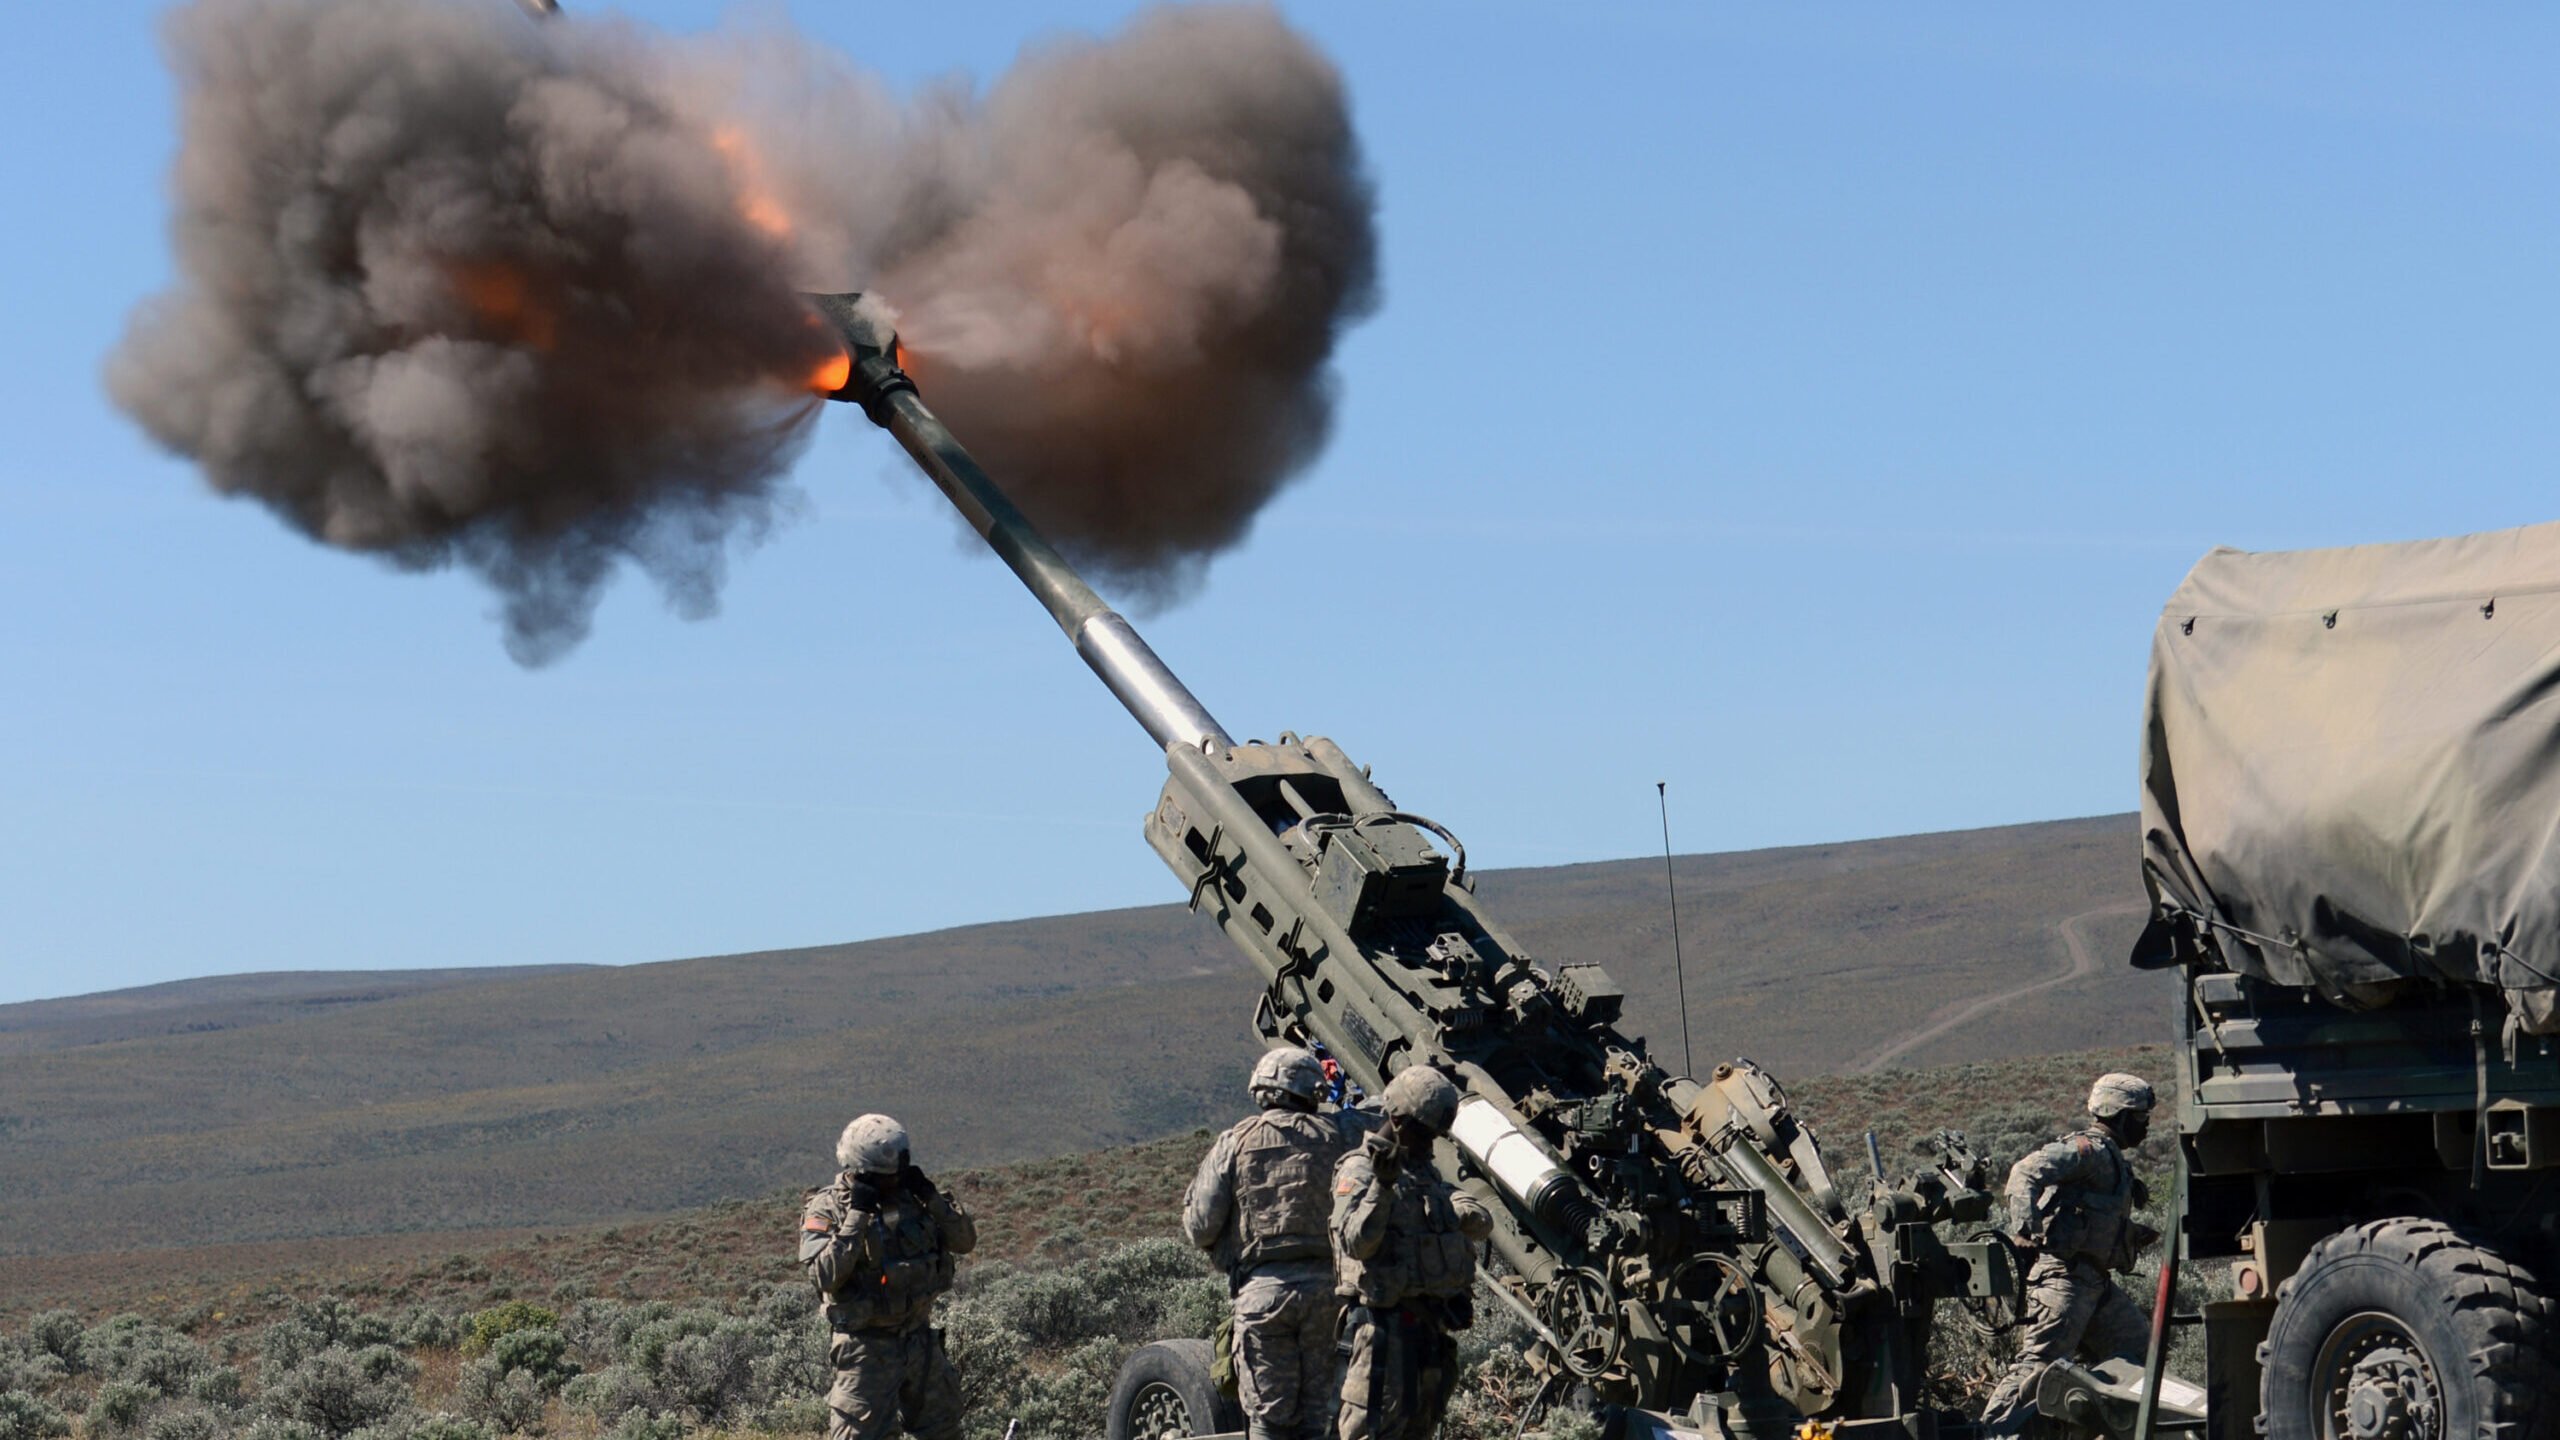 1-37 Field Artillery at YTC firing a M777 howitzer